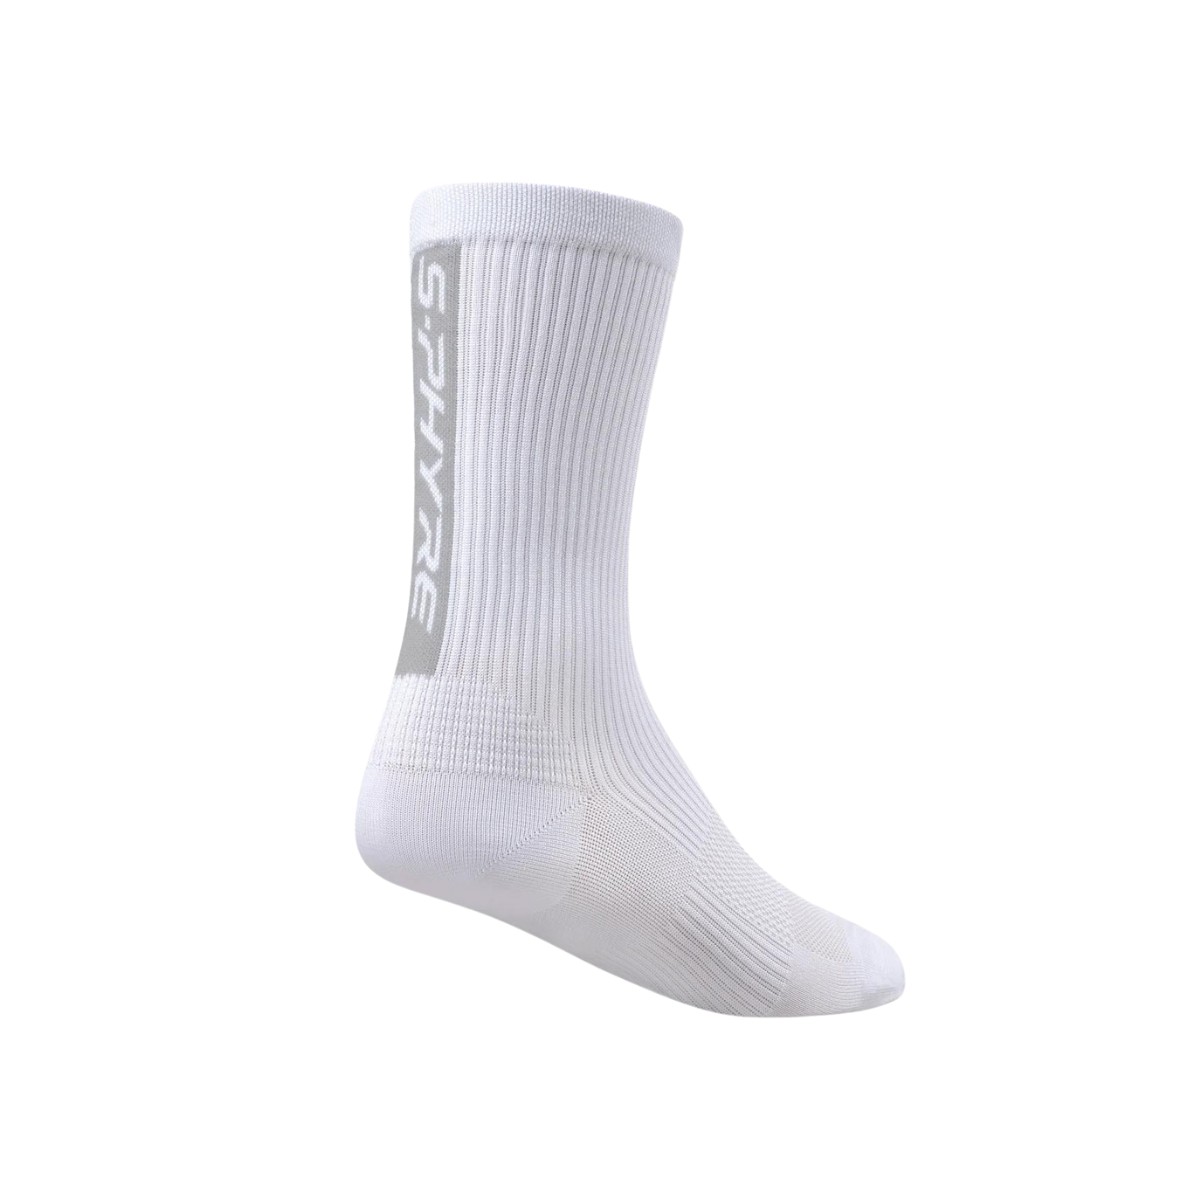 SPEZIELL günstig Kaufen-Shimano S-Phyre Flash Weiße Socken, Größe M/L. Shimano S-Phyre Flash Weiße Socken, Größe M/L <![CDATA[Shimano S-Phyre Flash Socken Entdecken Sie maximale Leistung mit den Shimano S-Phyre Flash Socken, die speziell für Hochge